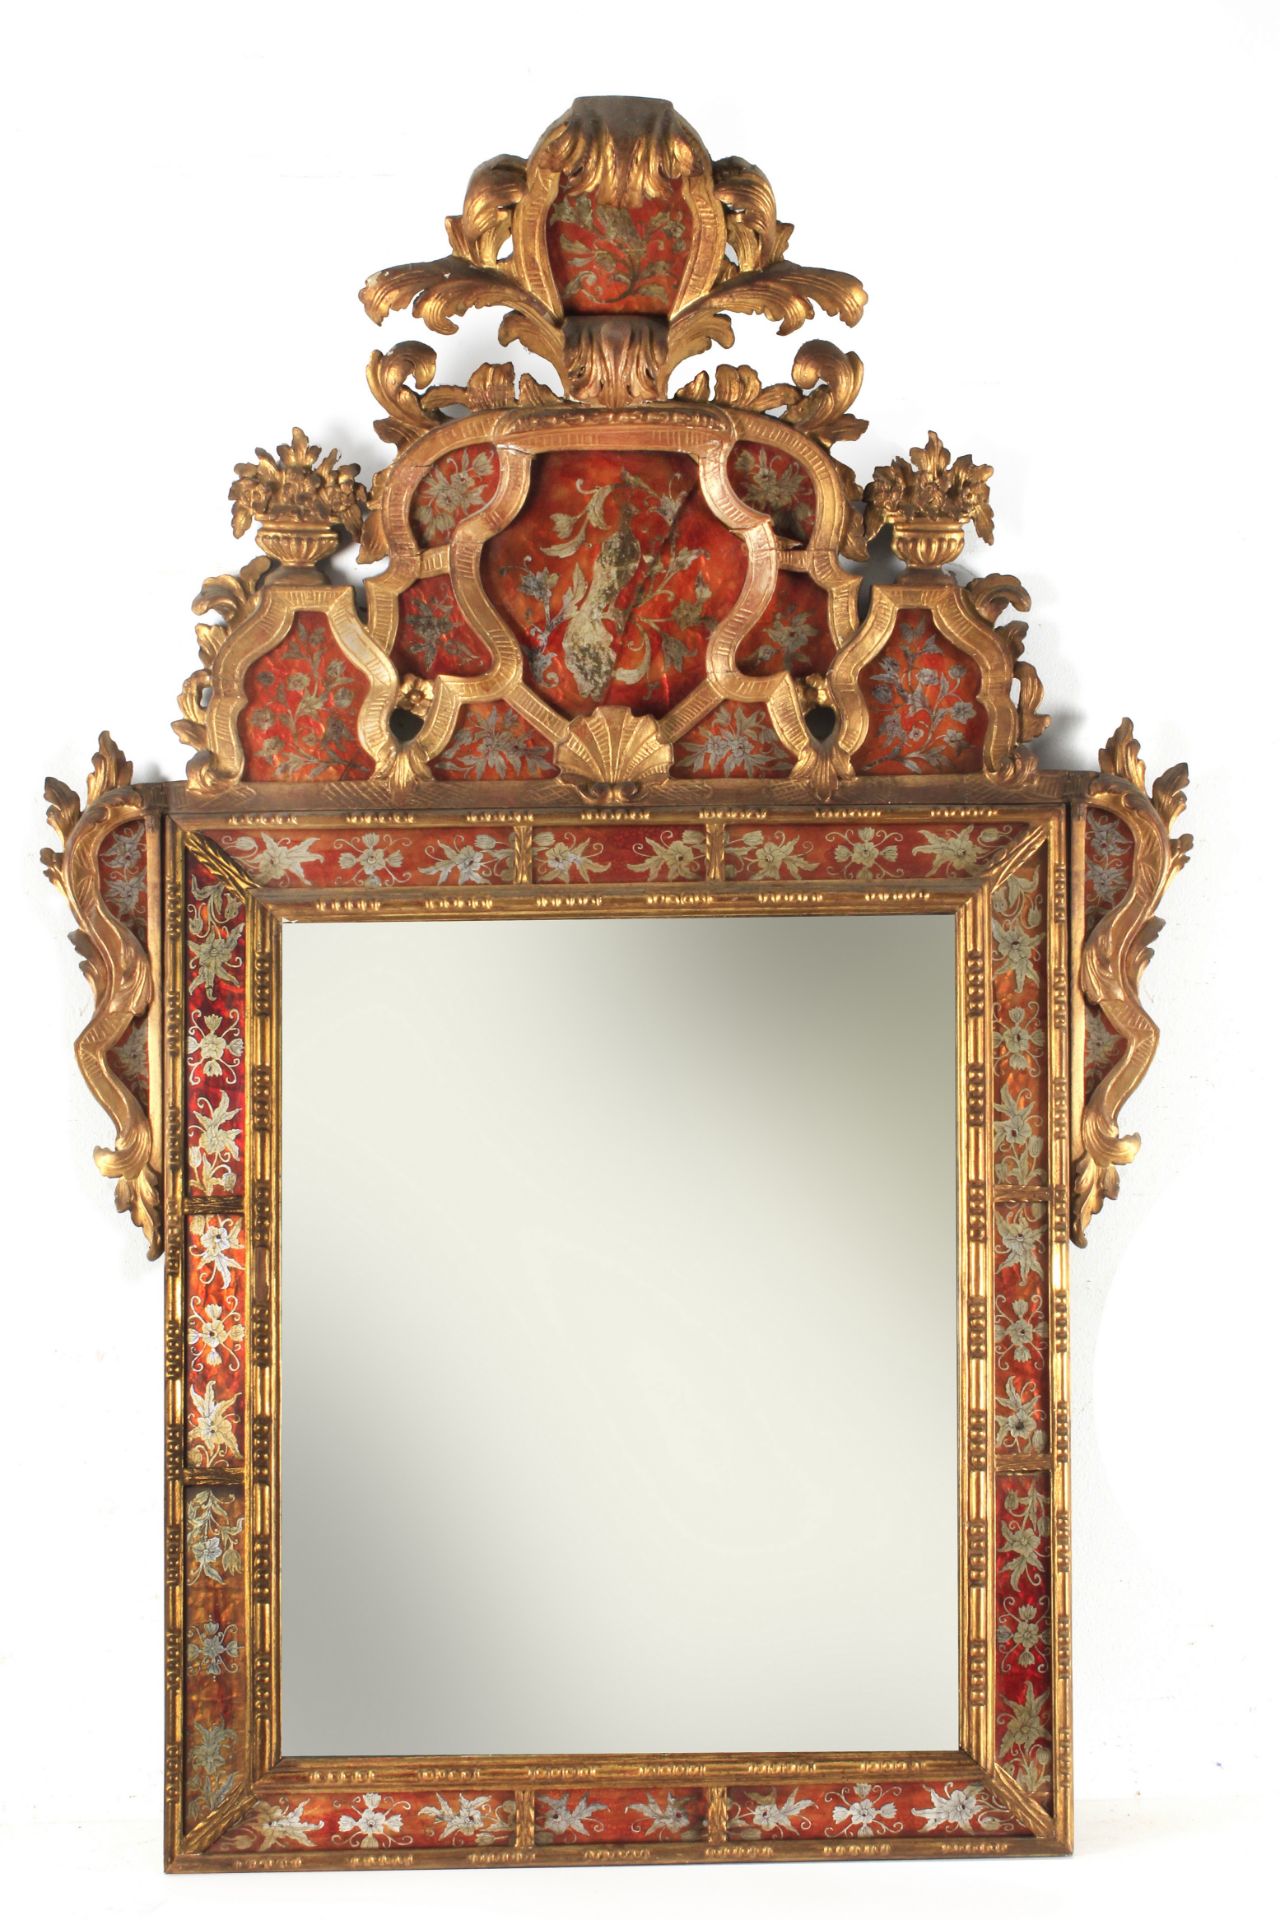 An 18th century Venetian mirror